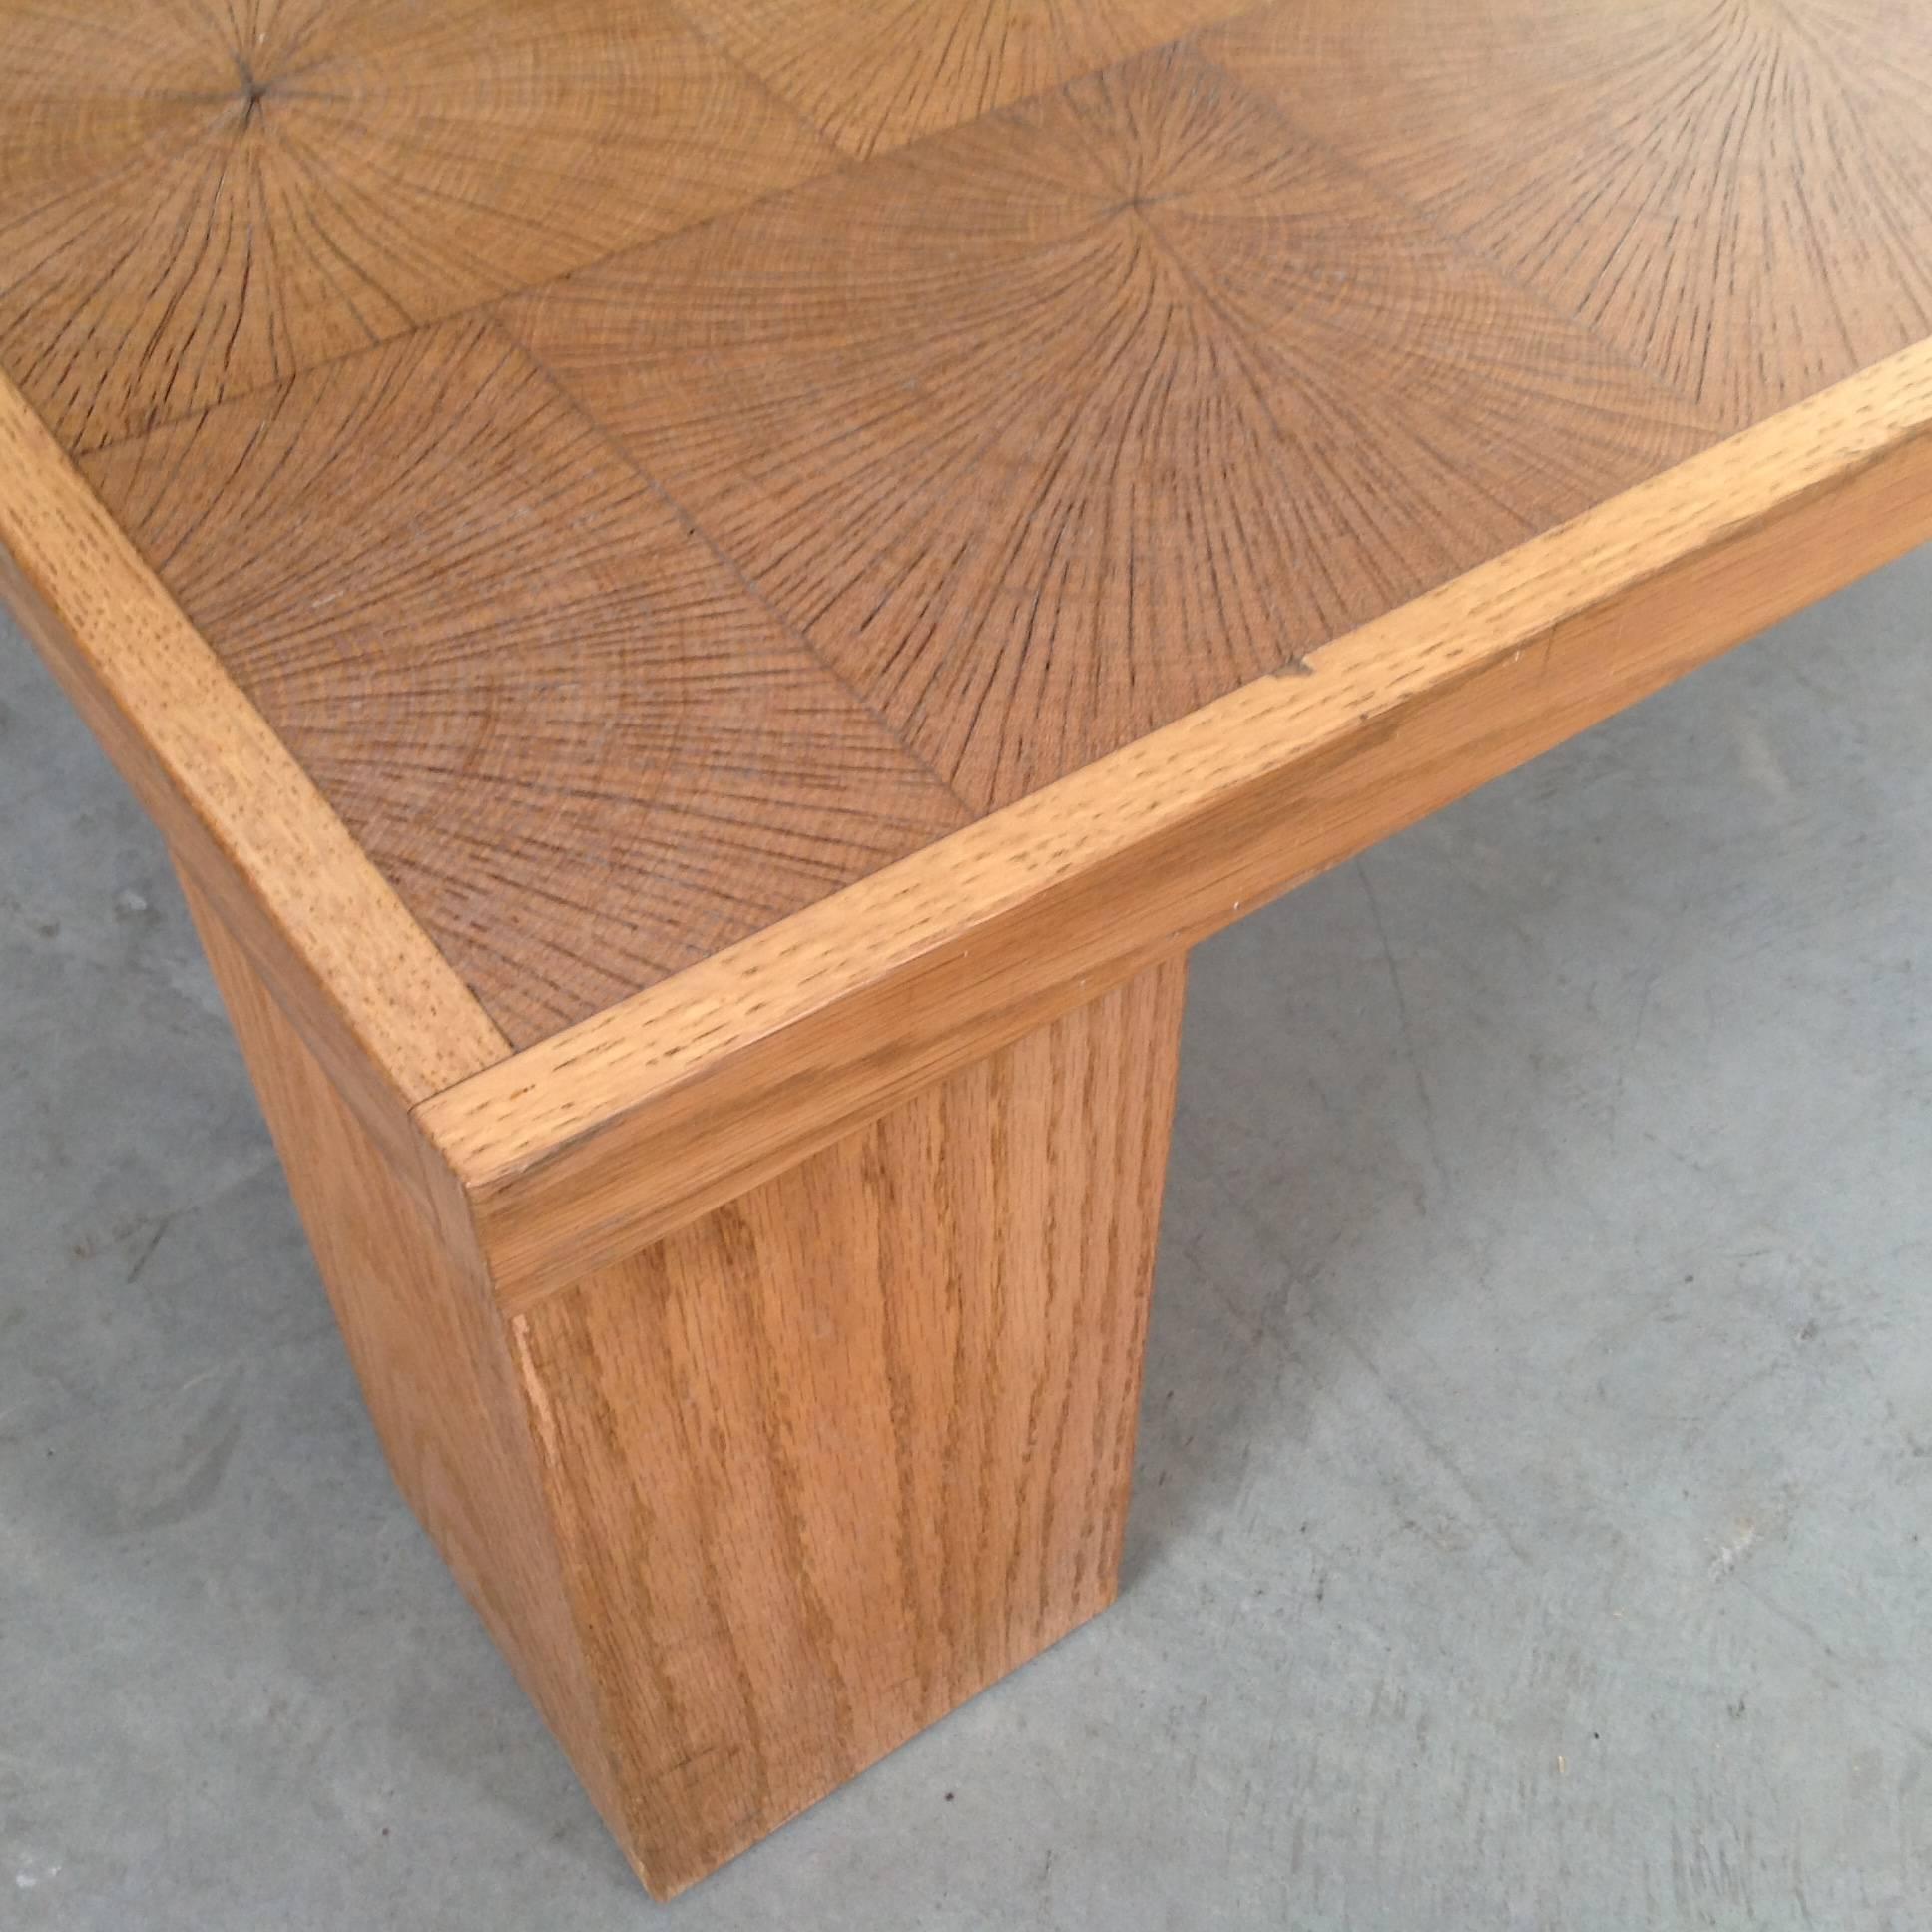 Elegant Coffee Table in Solid Oak Block Wood by Emiel Veranneman, Anno, 1969 For Sale 1